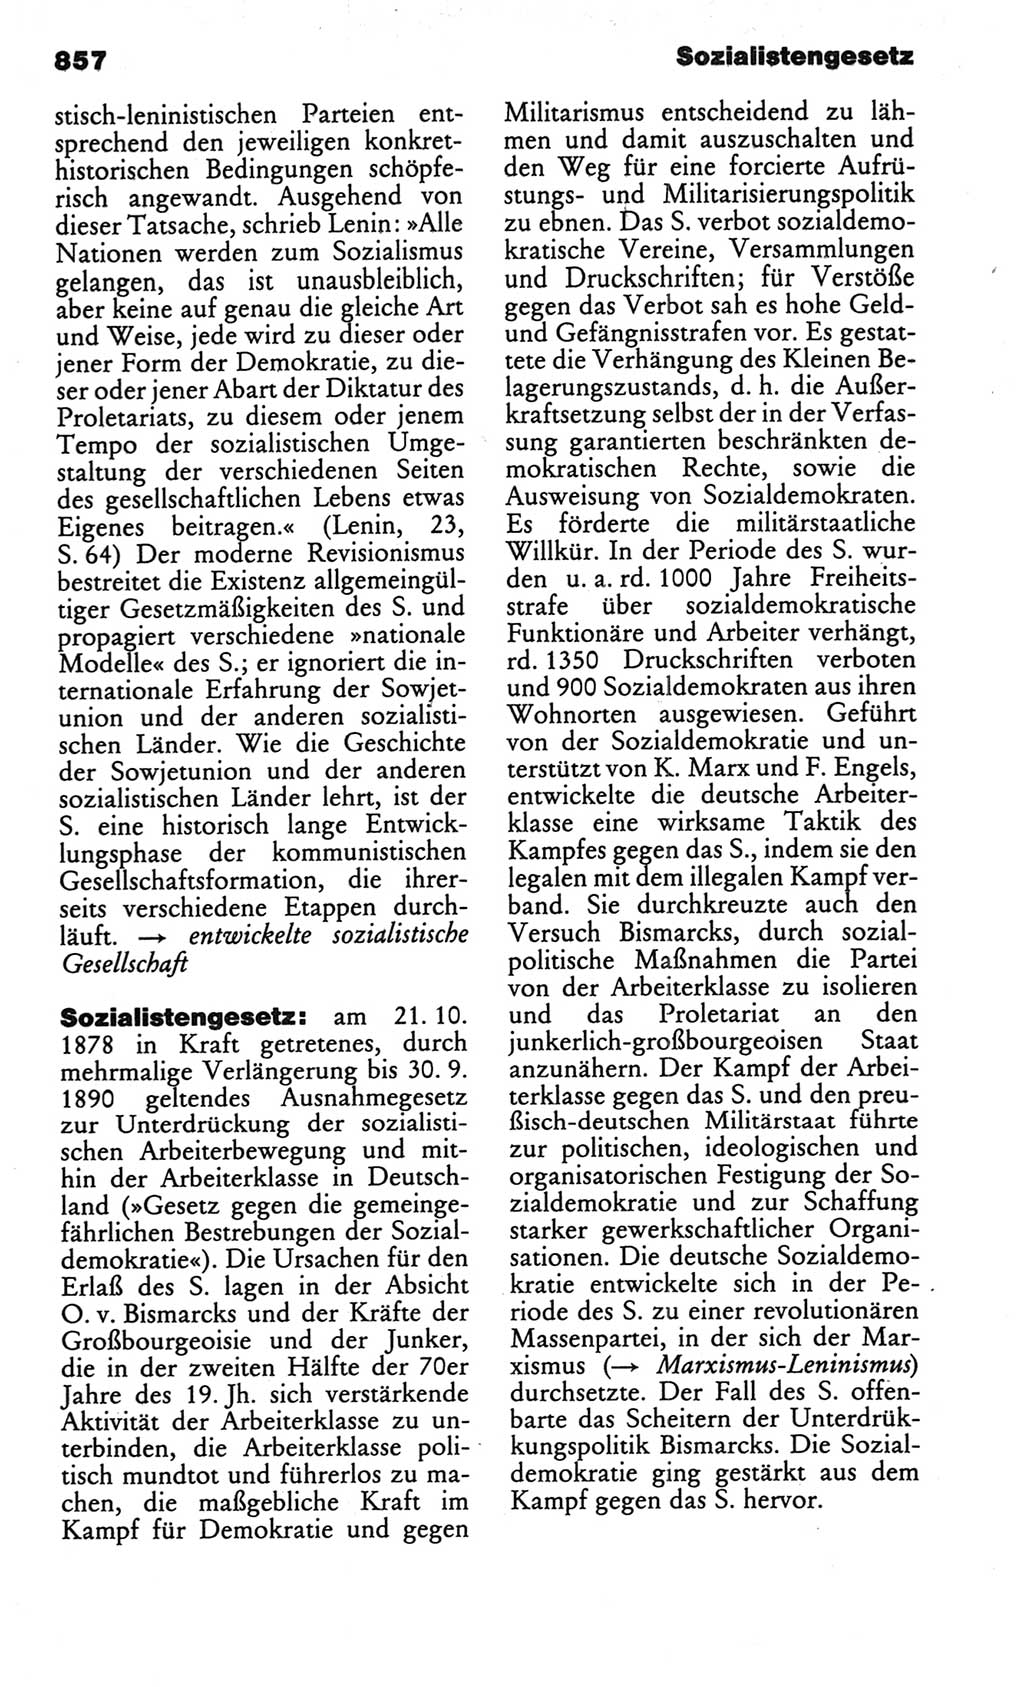 Kleines politisches Wörterbuch [Deutsche Demokratische Republik (DDR)] 1986, Seite 857 (Kl. pol. Wb. DDR 1986, S. 857)